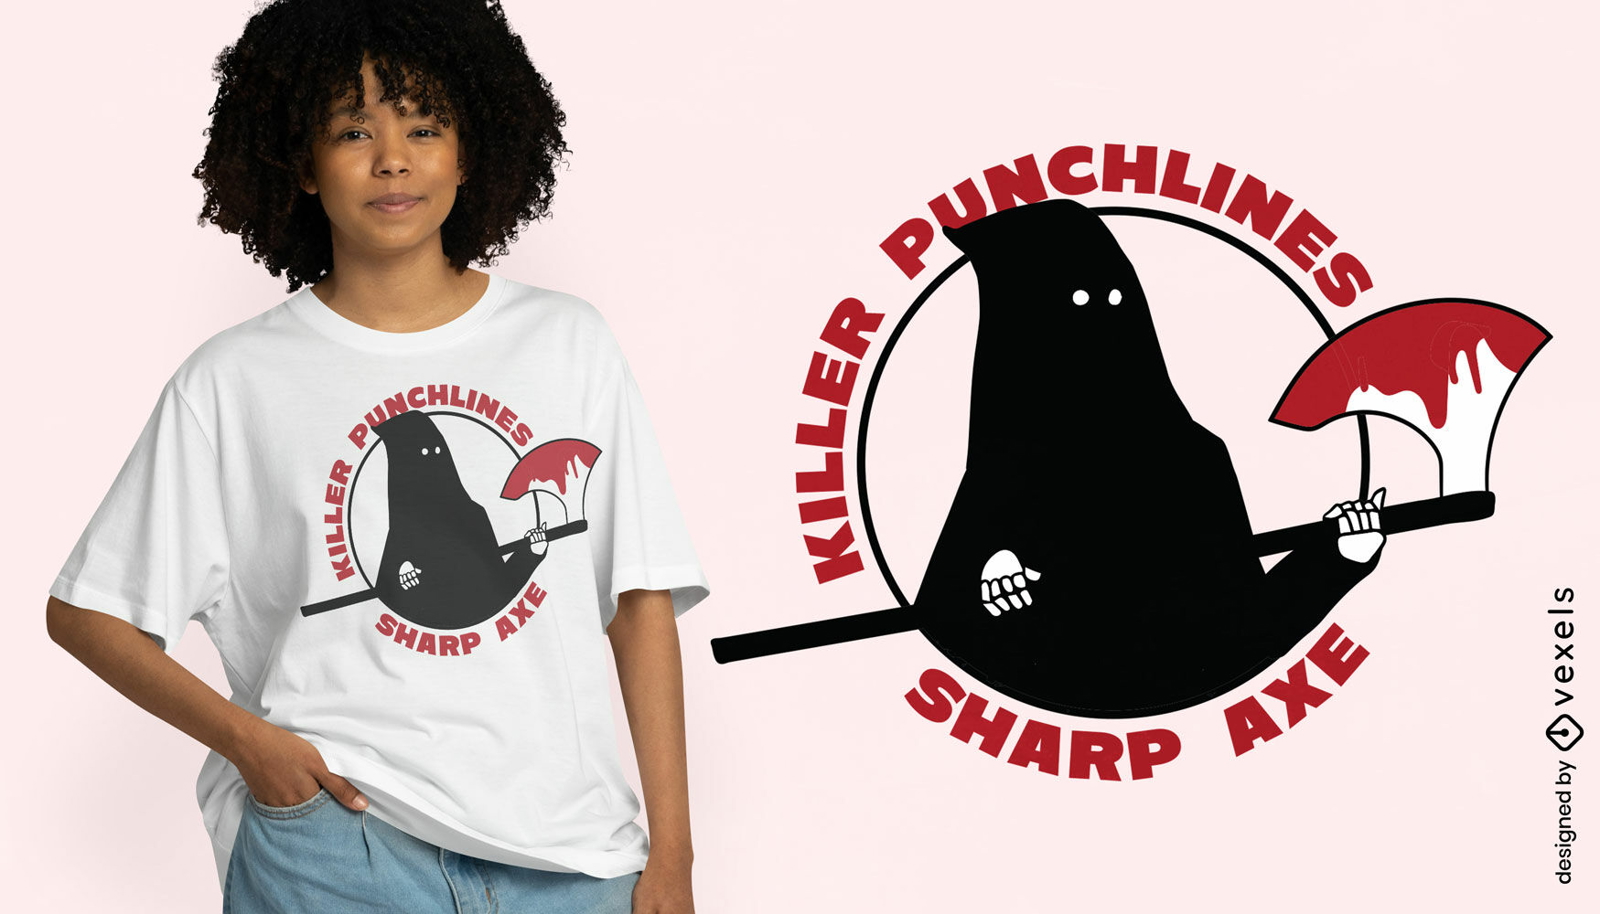 Killer punchlines t-shirt design